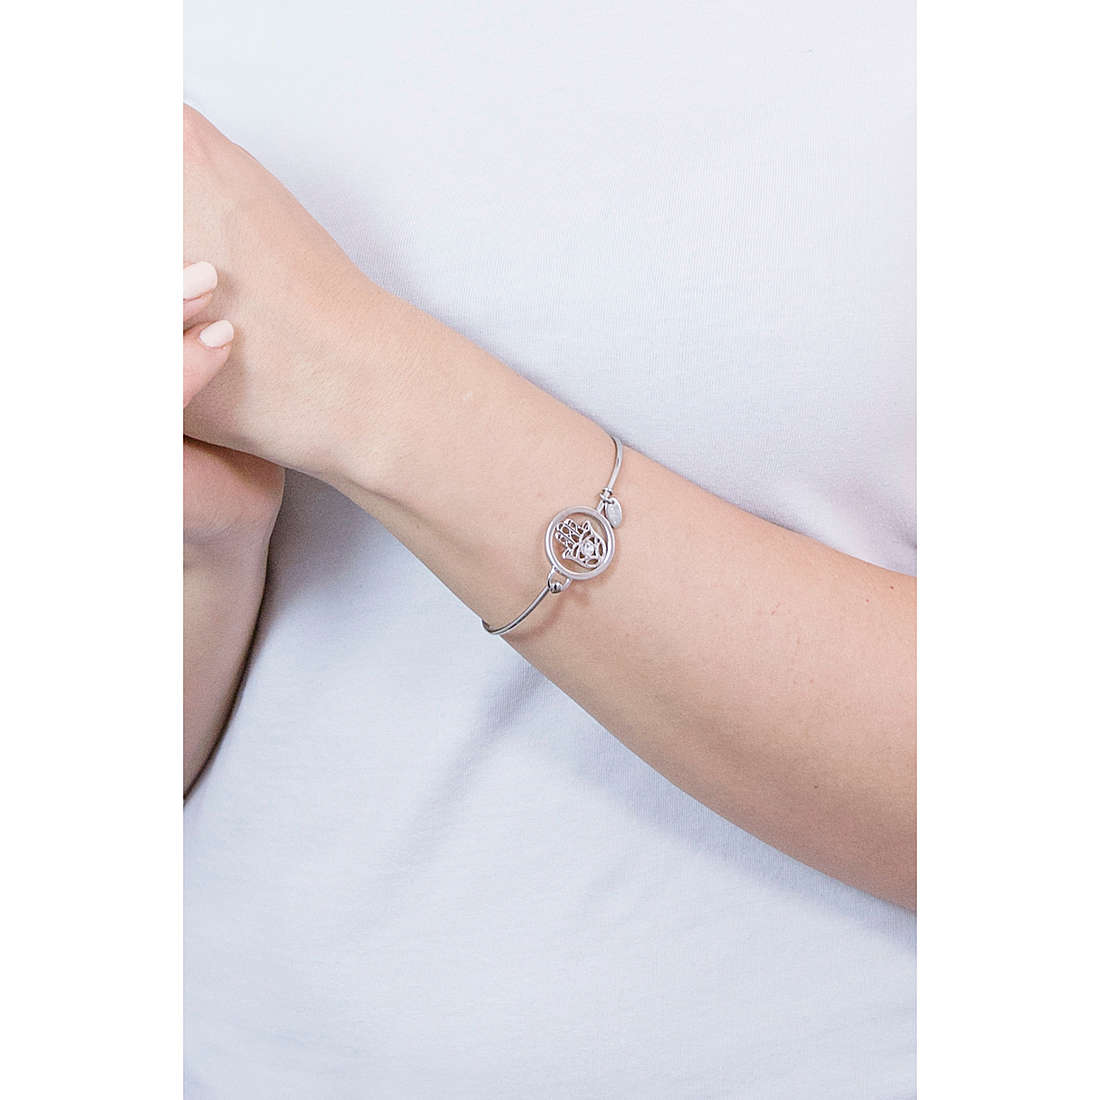 Lotus Style bracelets Millennial woman LS2014-2/6 wearing